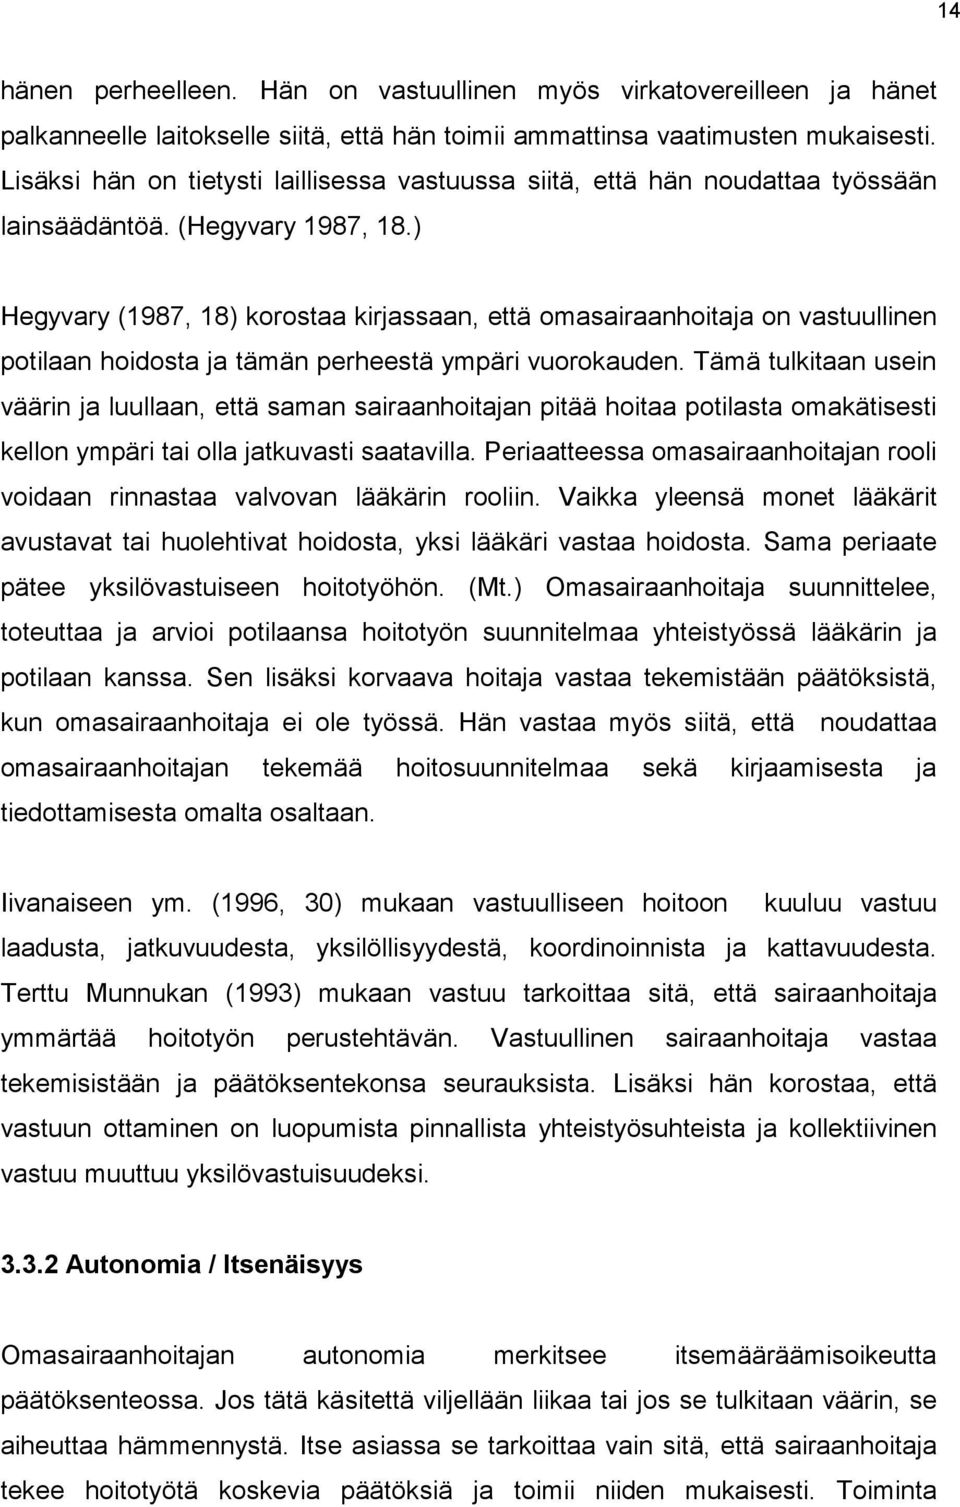 ) Hegyvary (1987, 18) korostaa kirjassaan, että omasairaanhoitaja on vastuullinen potilaan hoidosta ja tämän perheestä ympäri vuorokauden.